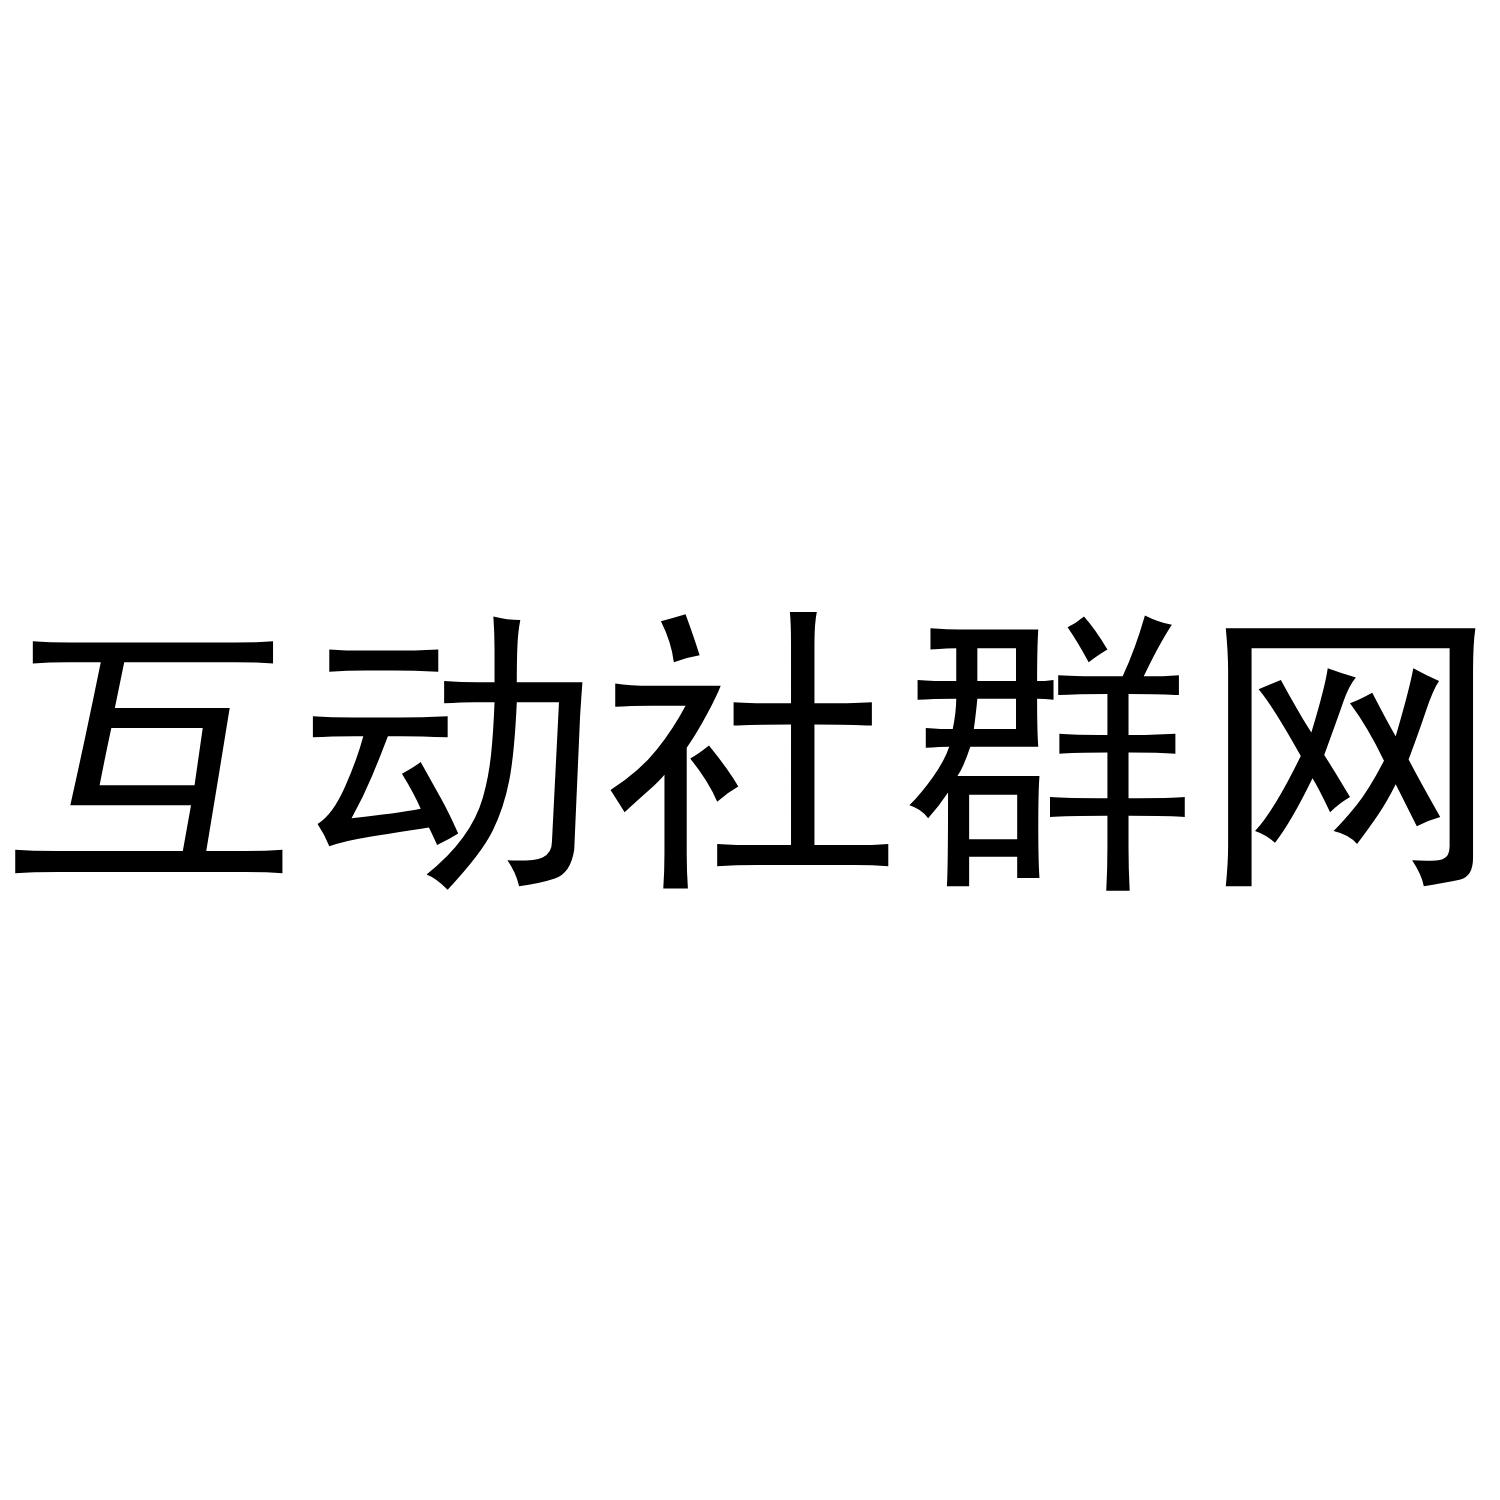 商标文字互动社群网商标注册号 43314113,商标申请人广州市蓄元健康